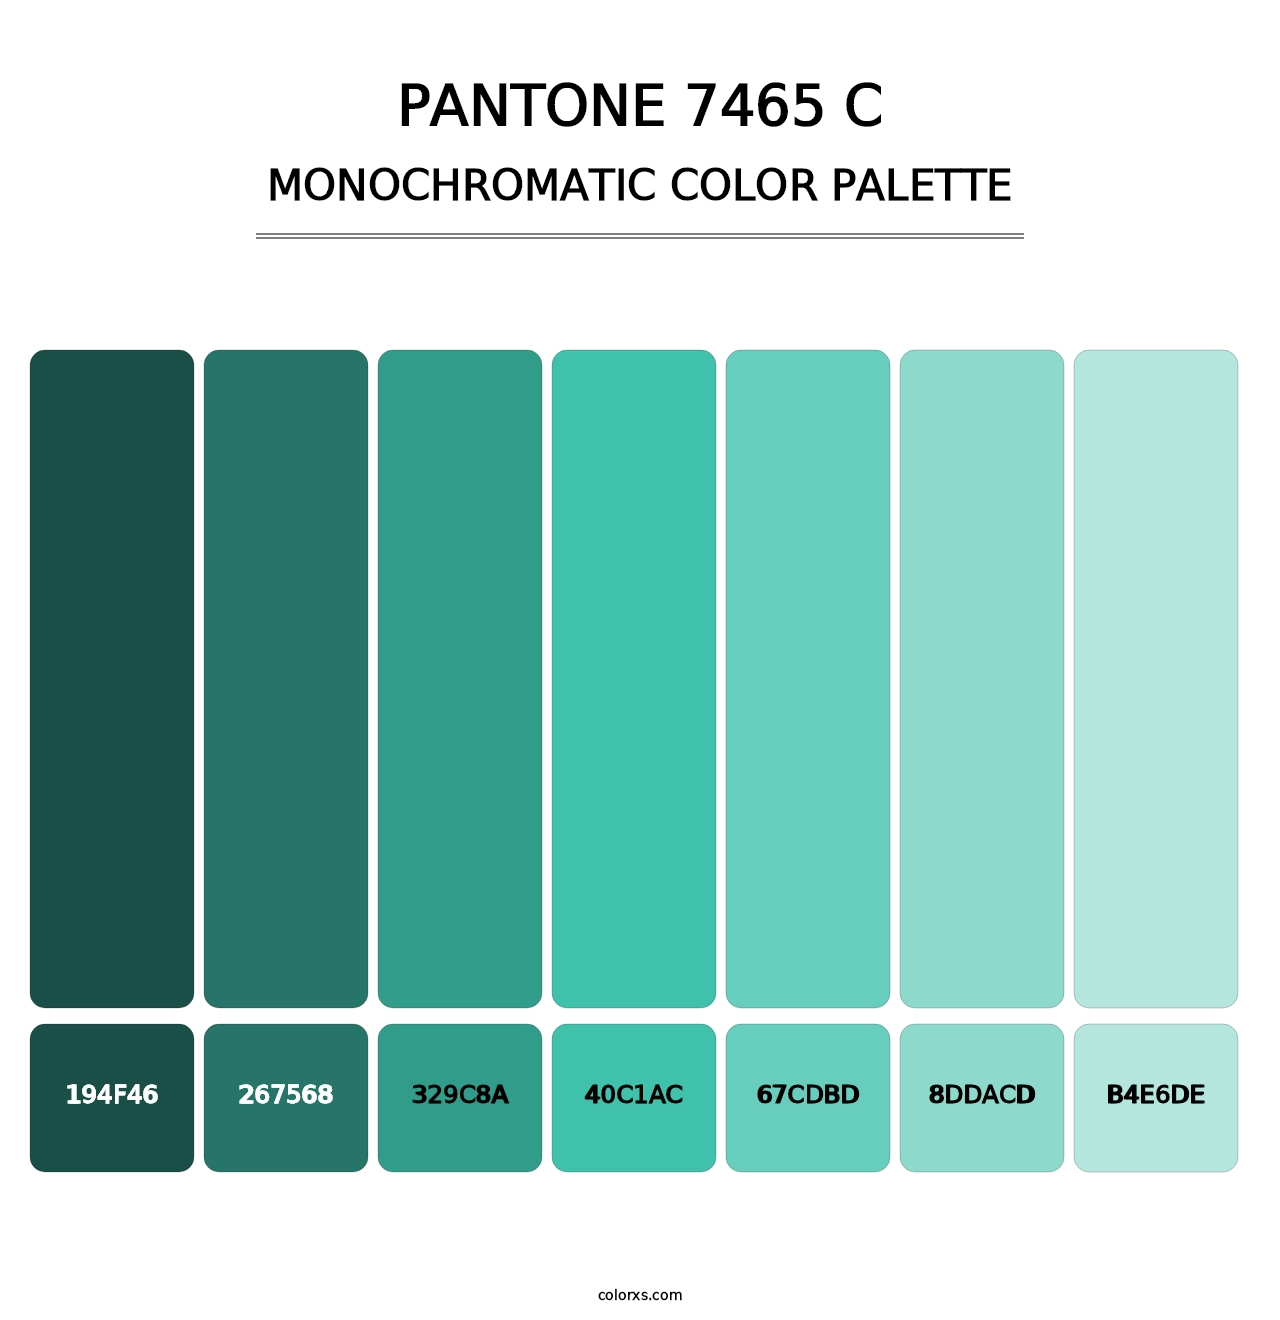 PANTONE 7465 C - Monochromatic Color Palette